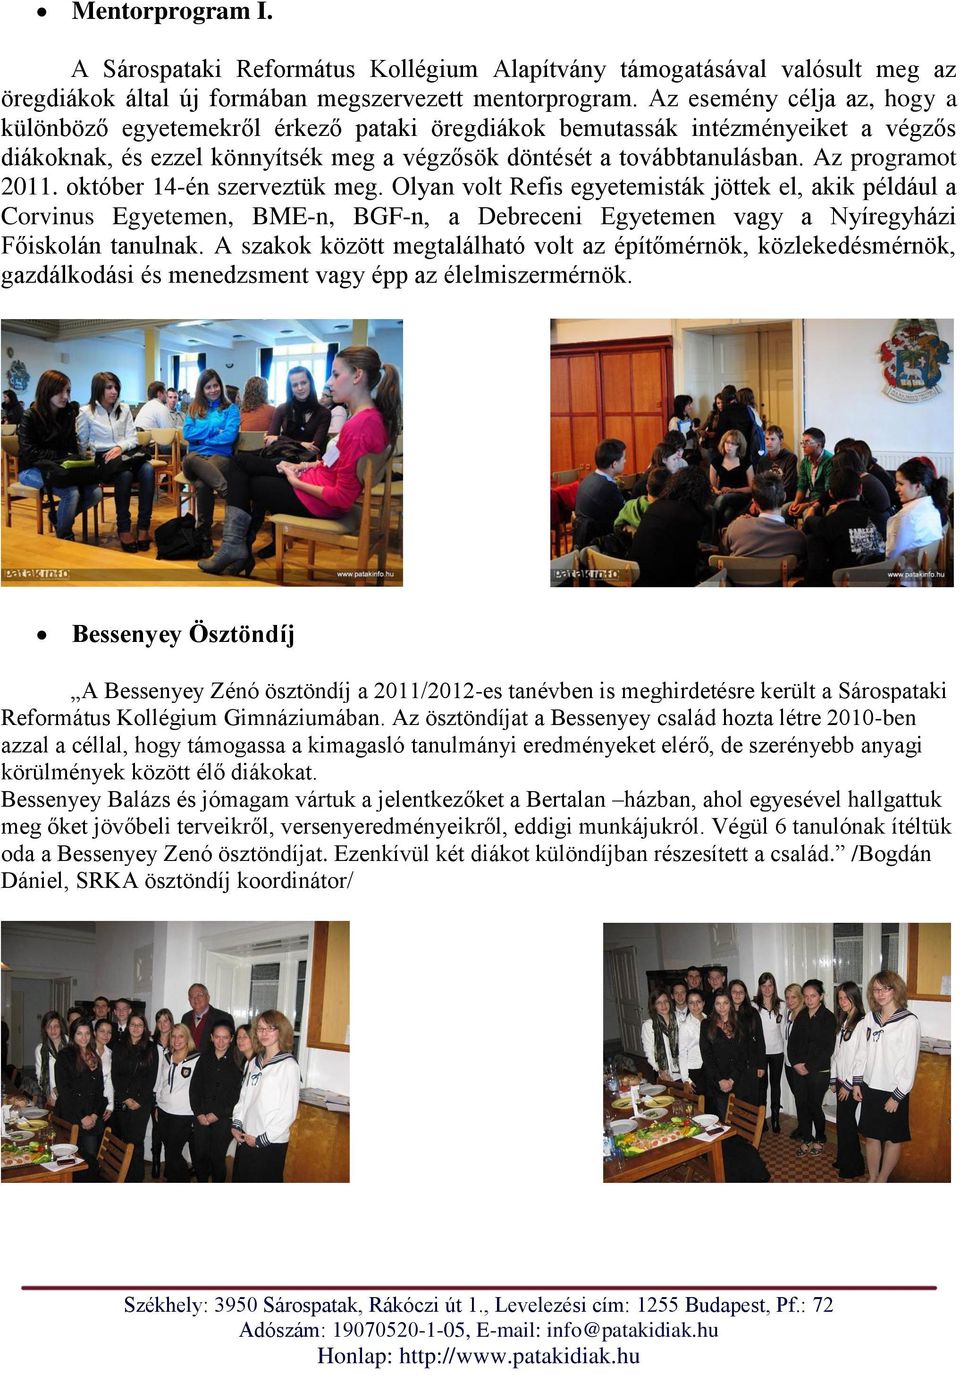 Az programot 2011. október 14-én szerveztük meg. Olyan volt Refis egyetemisták jöttek el, akik például a Corvinus Egyetemen, BME-n, BGF-n, a Debreceni Egyetemen vagy a Nyíregyházi Főiskolán tanulnak.